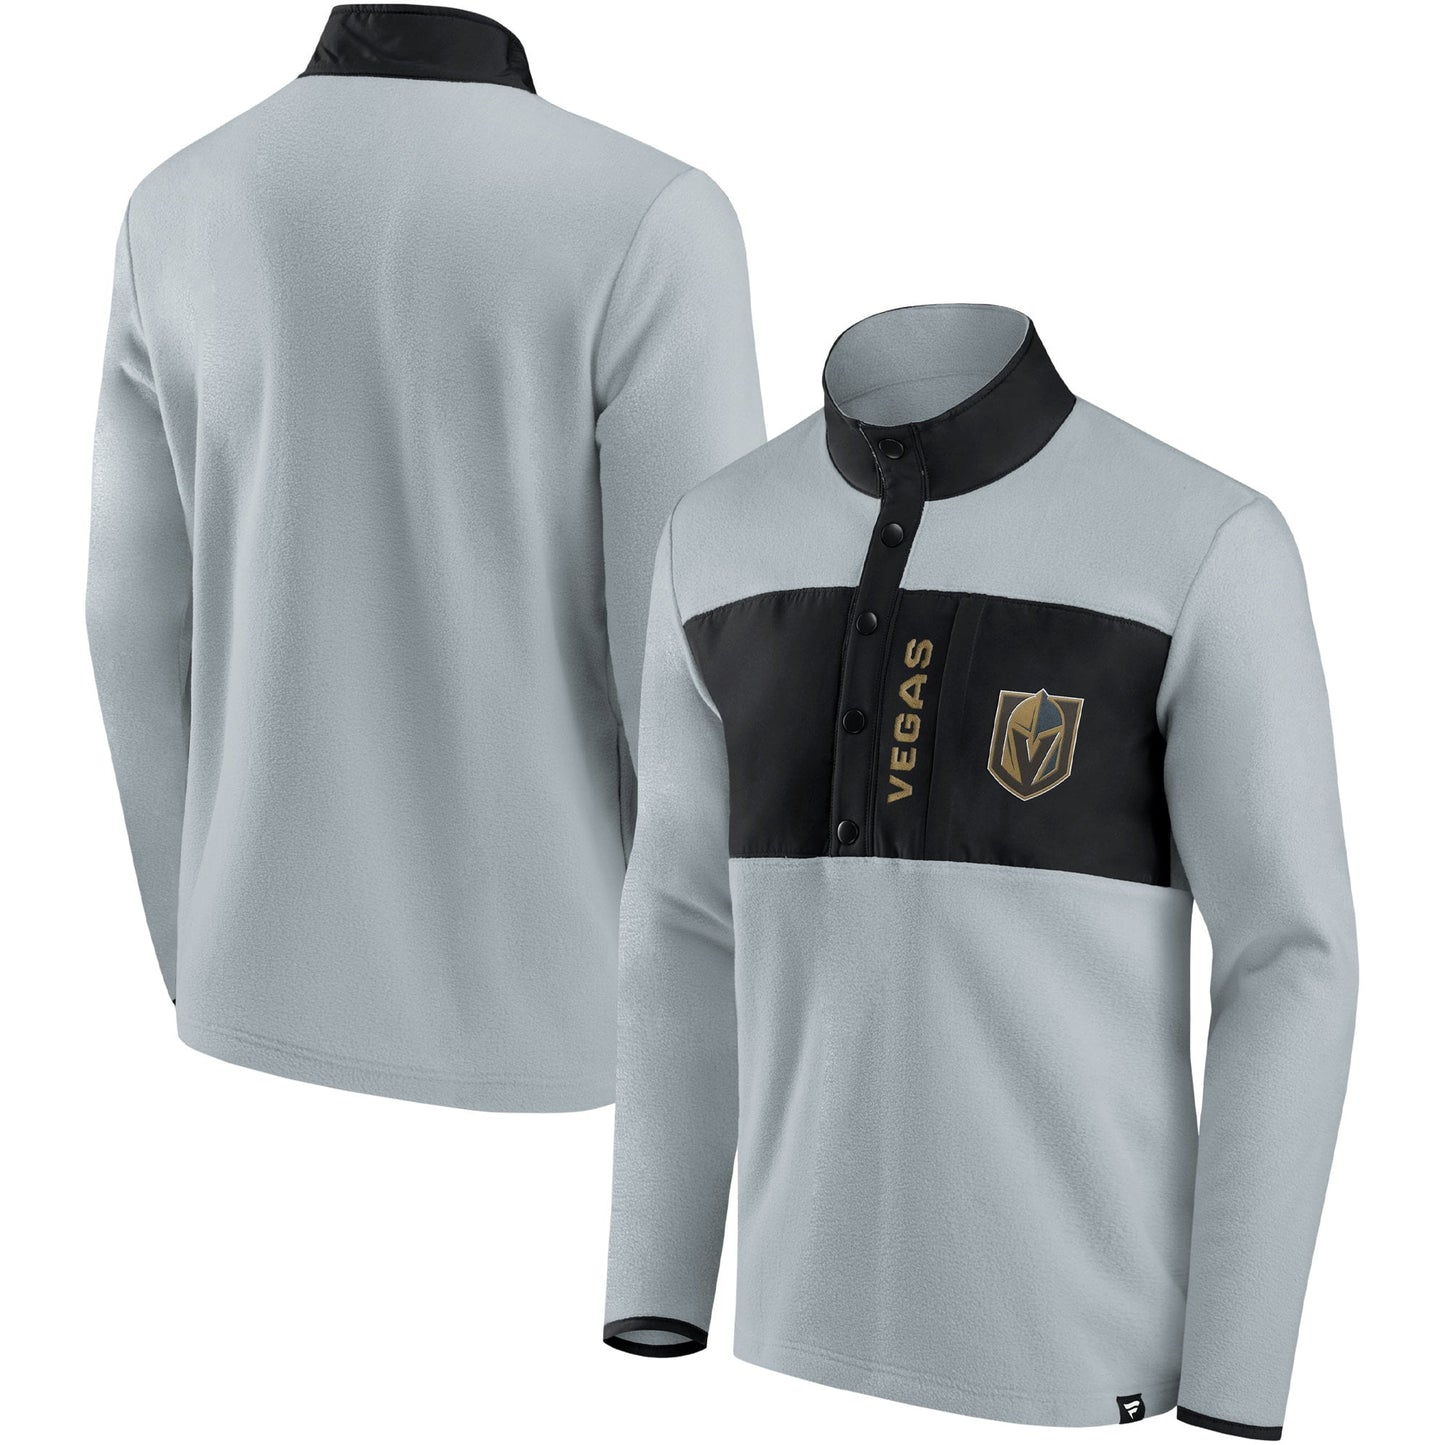 Men's Fanatics Branded Gray/Black Vegas Golden Knights Hockey Polar Fleece Quarter-Snap Jacket